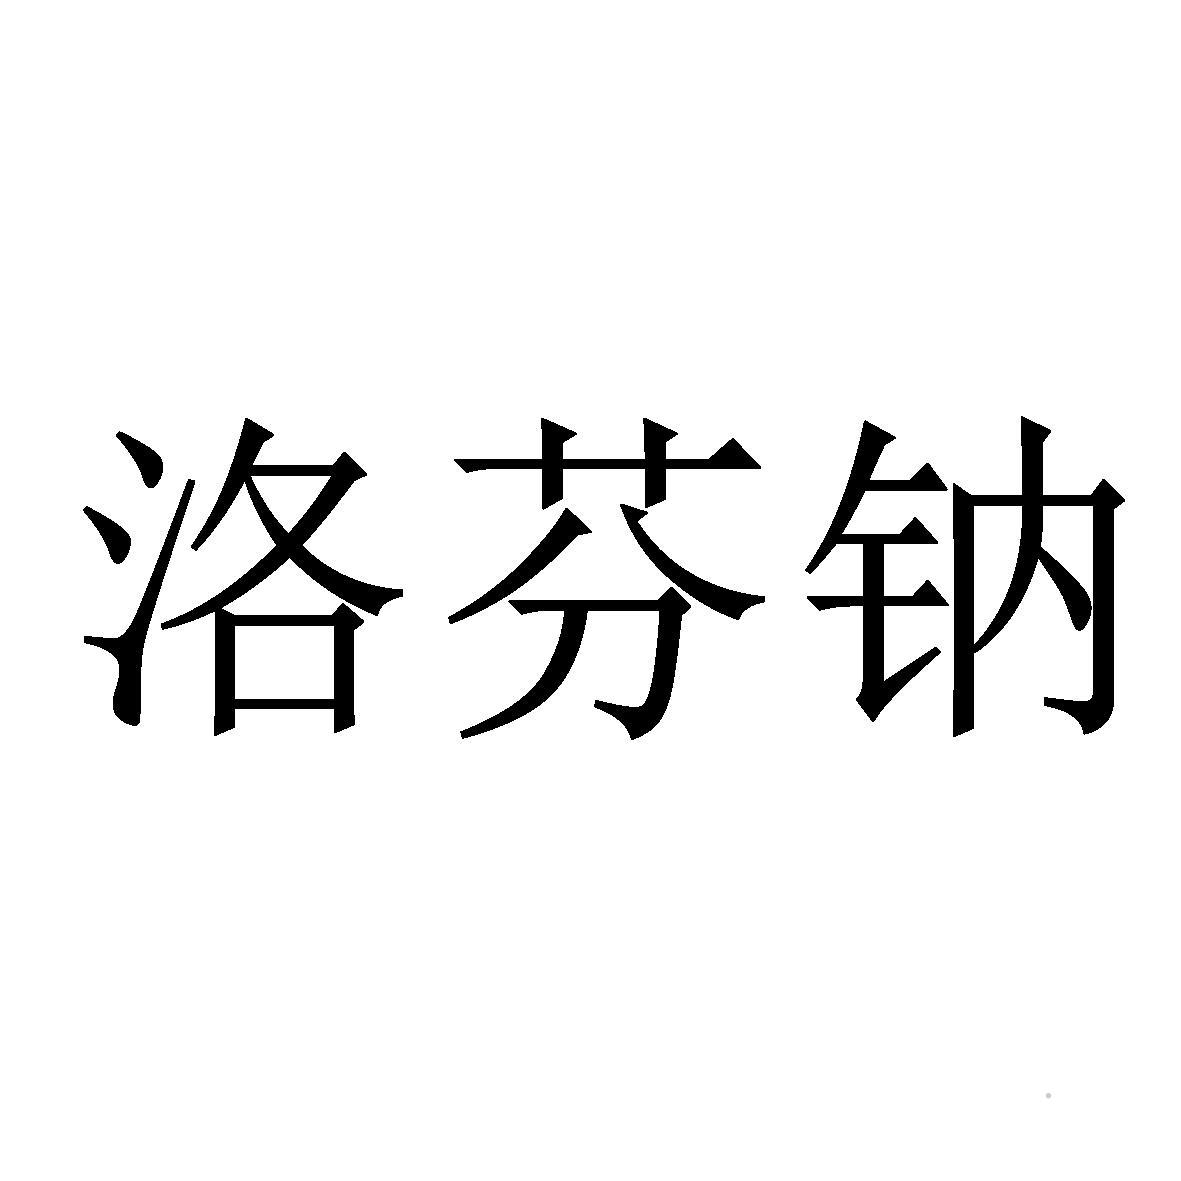 洛芬钠logo